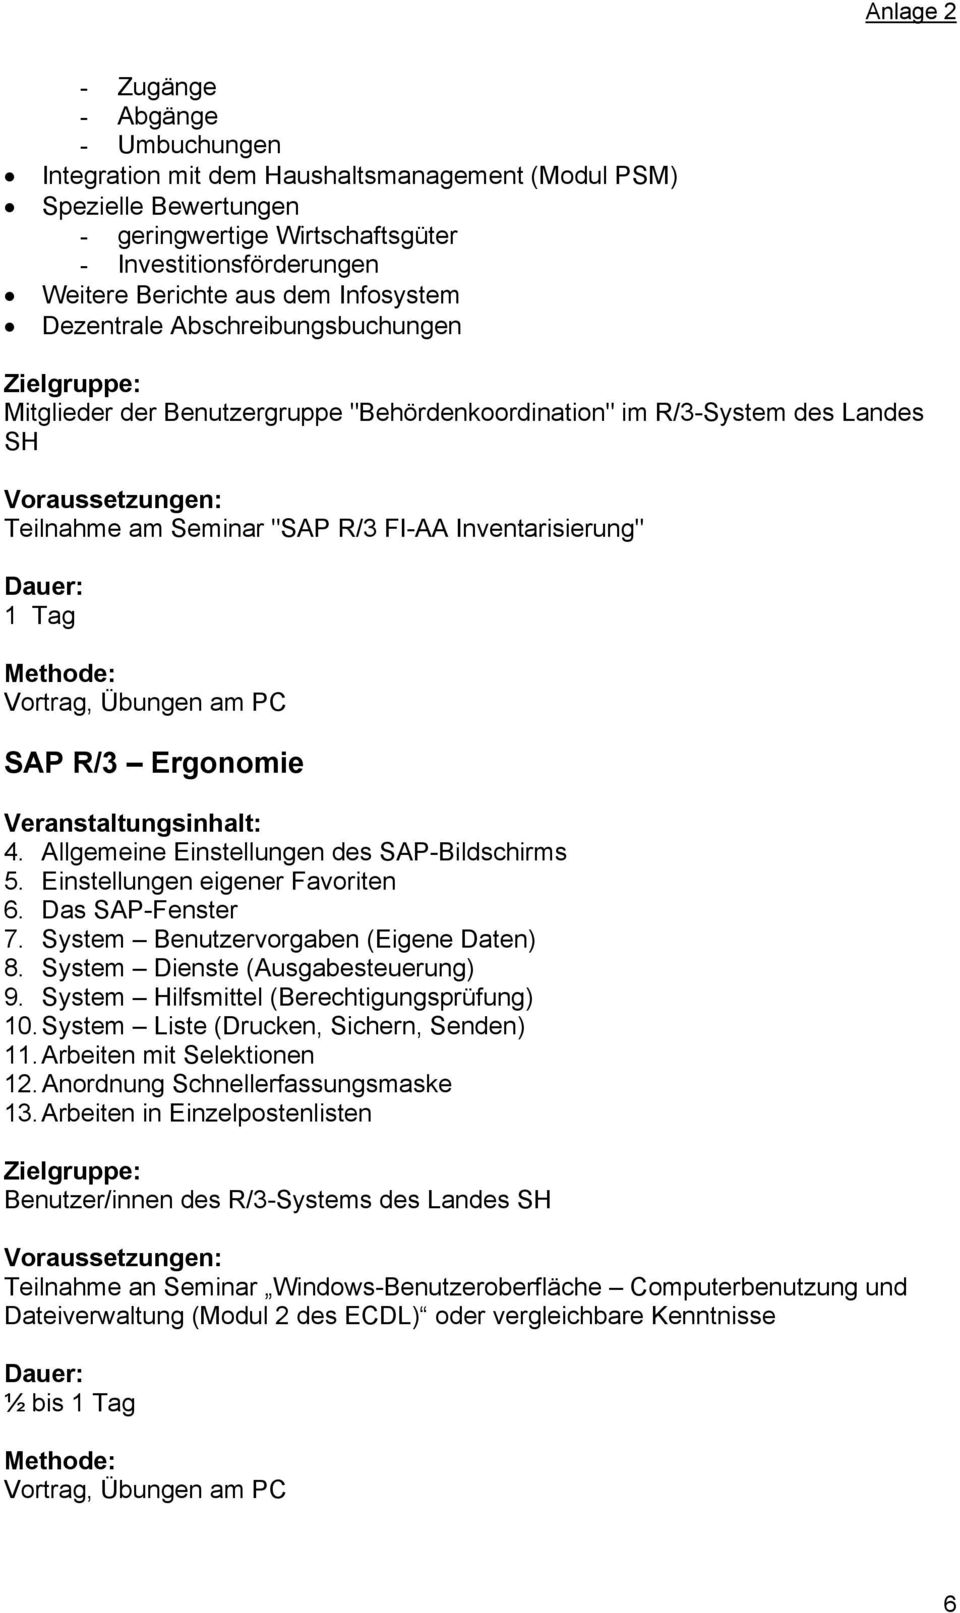 Ergonomie 4. Allgemeine Einstellungen des SAP-Bildschirms 5. Einstellungen eigener Favoriten 6. Das SAP-Fenster 7. System Benutzervorgaben (Eigene Daten) 8. System Dienste (Ausgabesteuerung) 9.